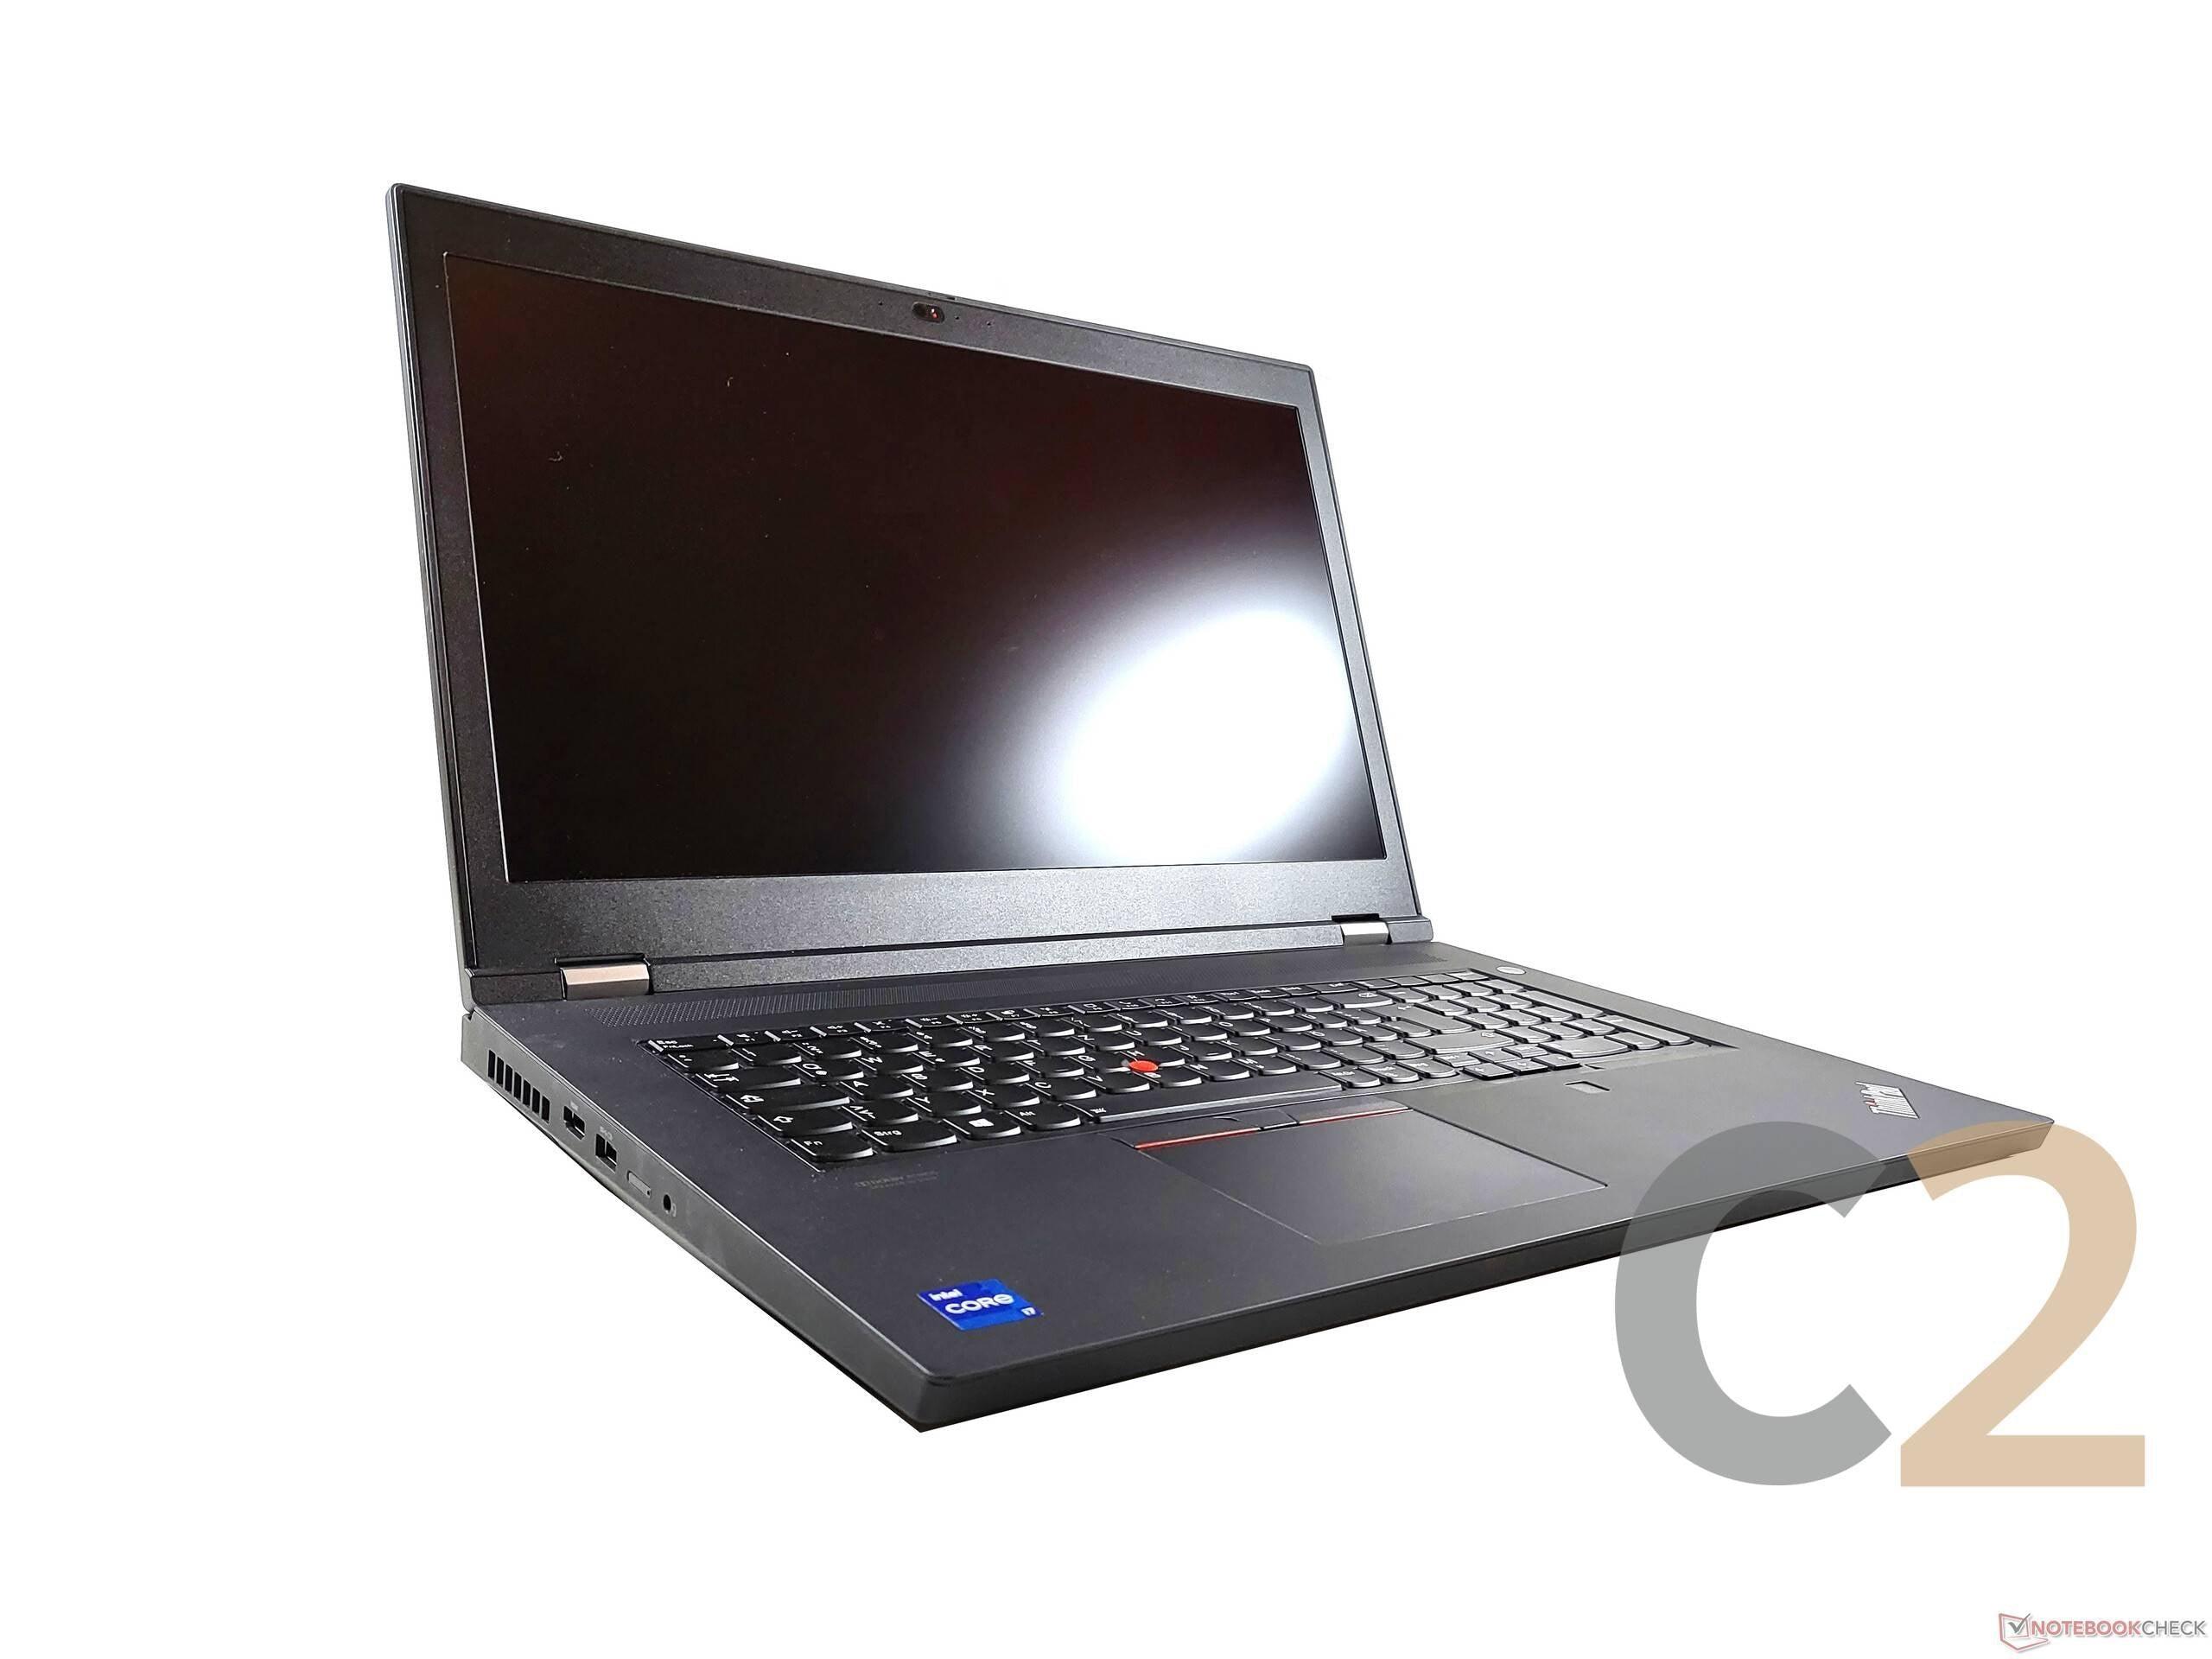 (NEW) LENOVO ThinkPad P17 G2 i7-11800H 16G 512-SSD NA Nvidia Quadro T1200 4GB 17.3inch 1920x1080 Mobile Workstation 100% - C2 Computer